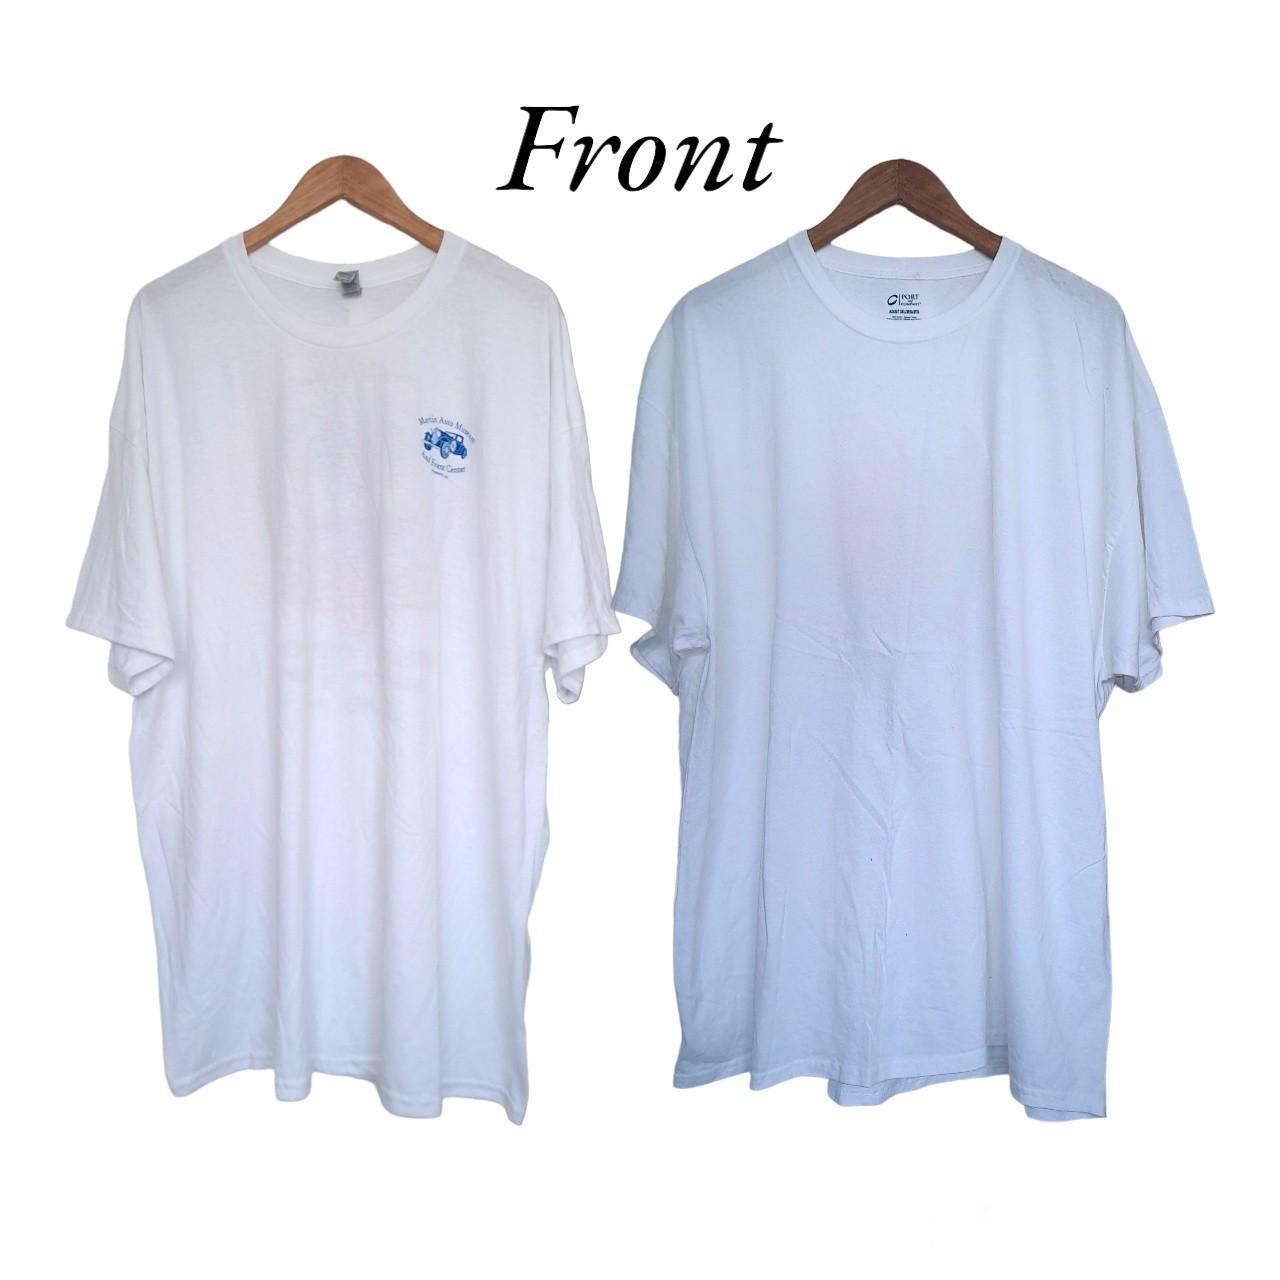 ×2 White T-shirts